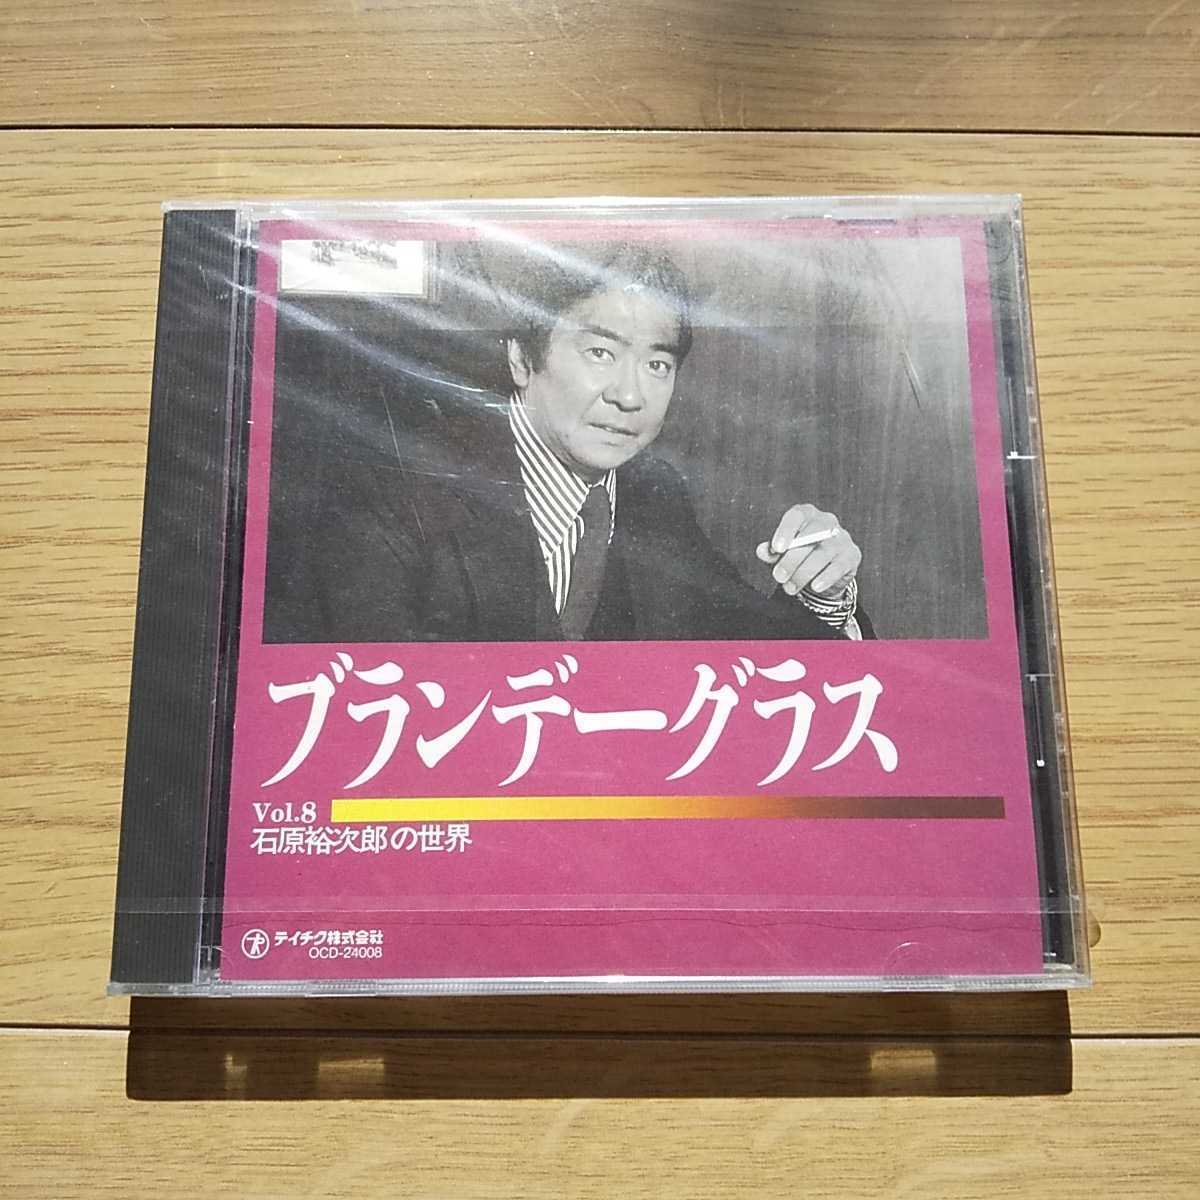 石原裕次郎の世界 CD全10巻 chamaraliyanage.lk